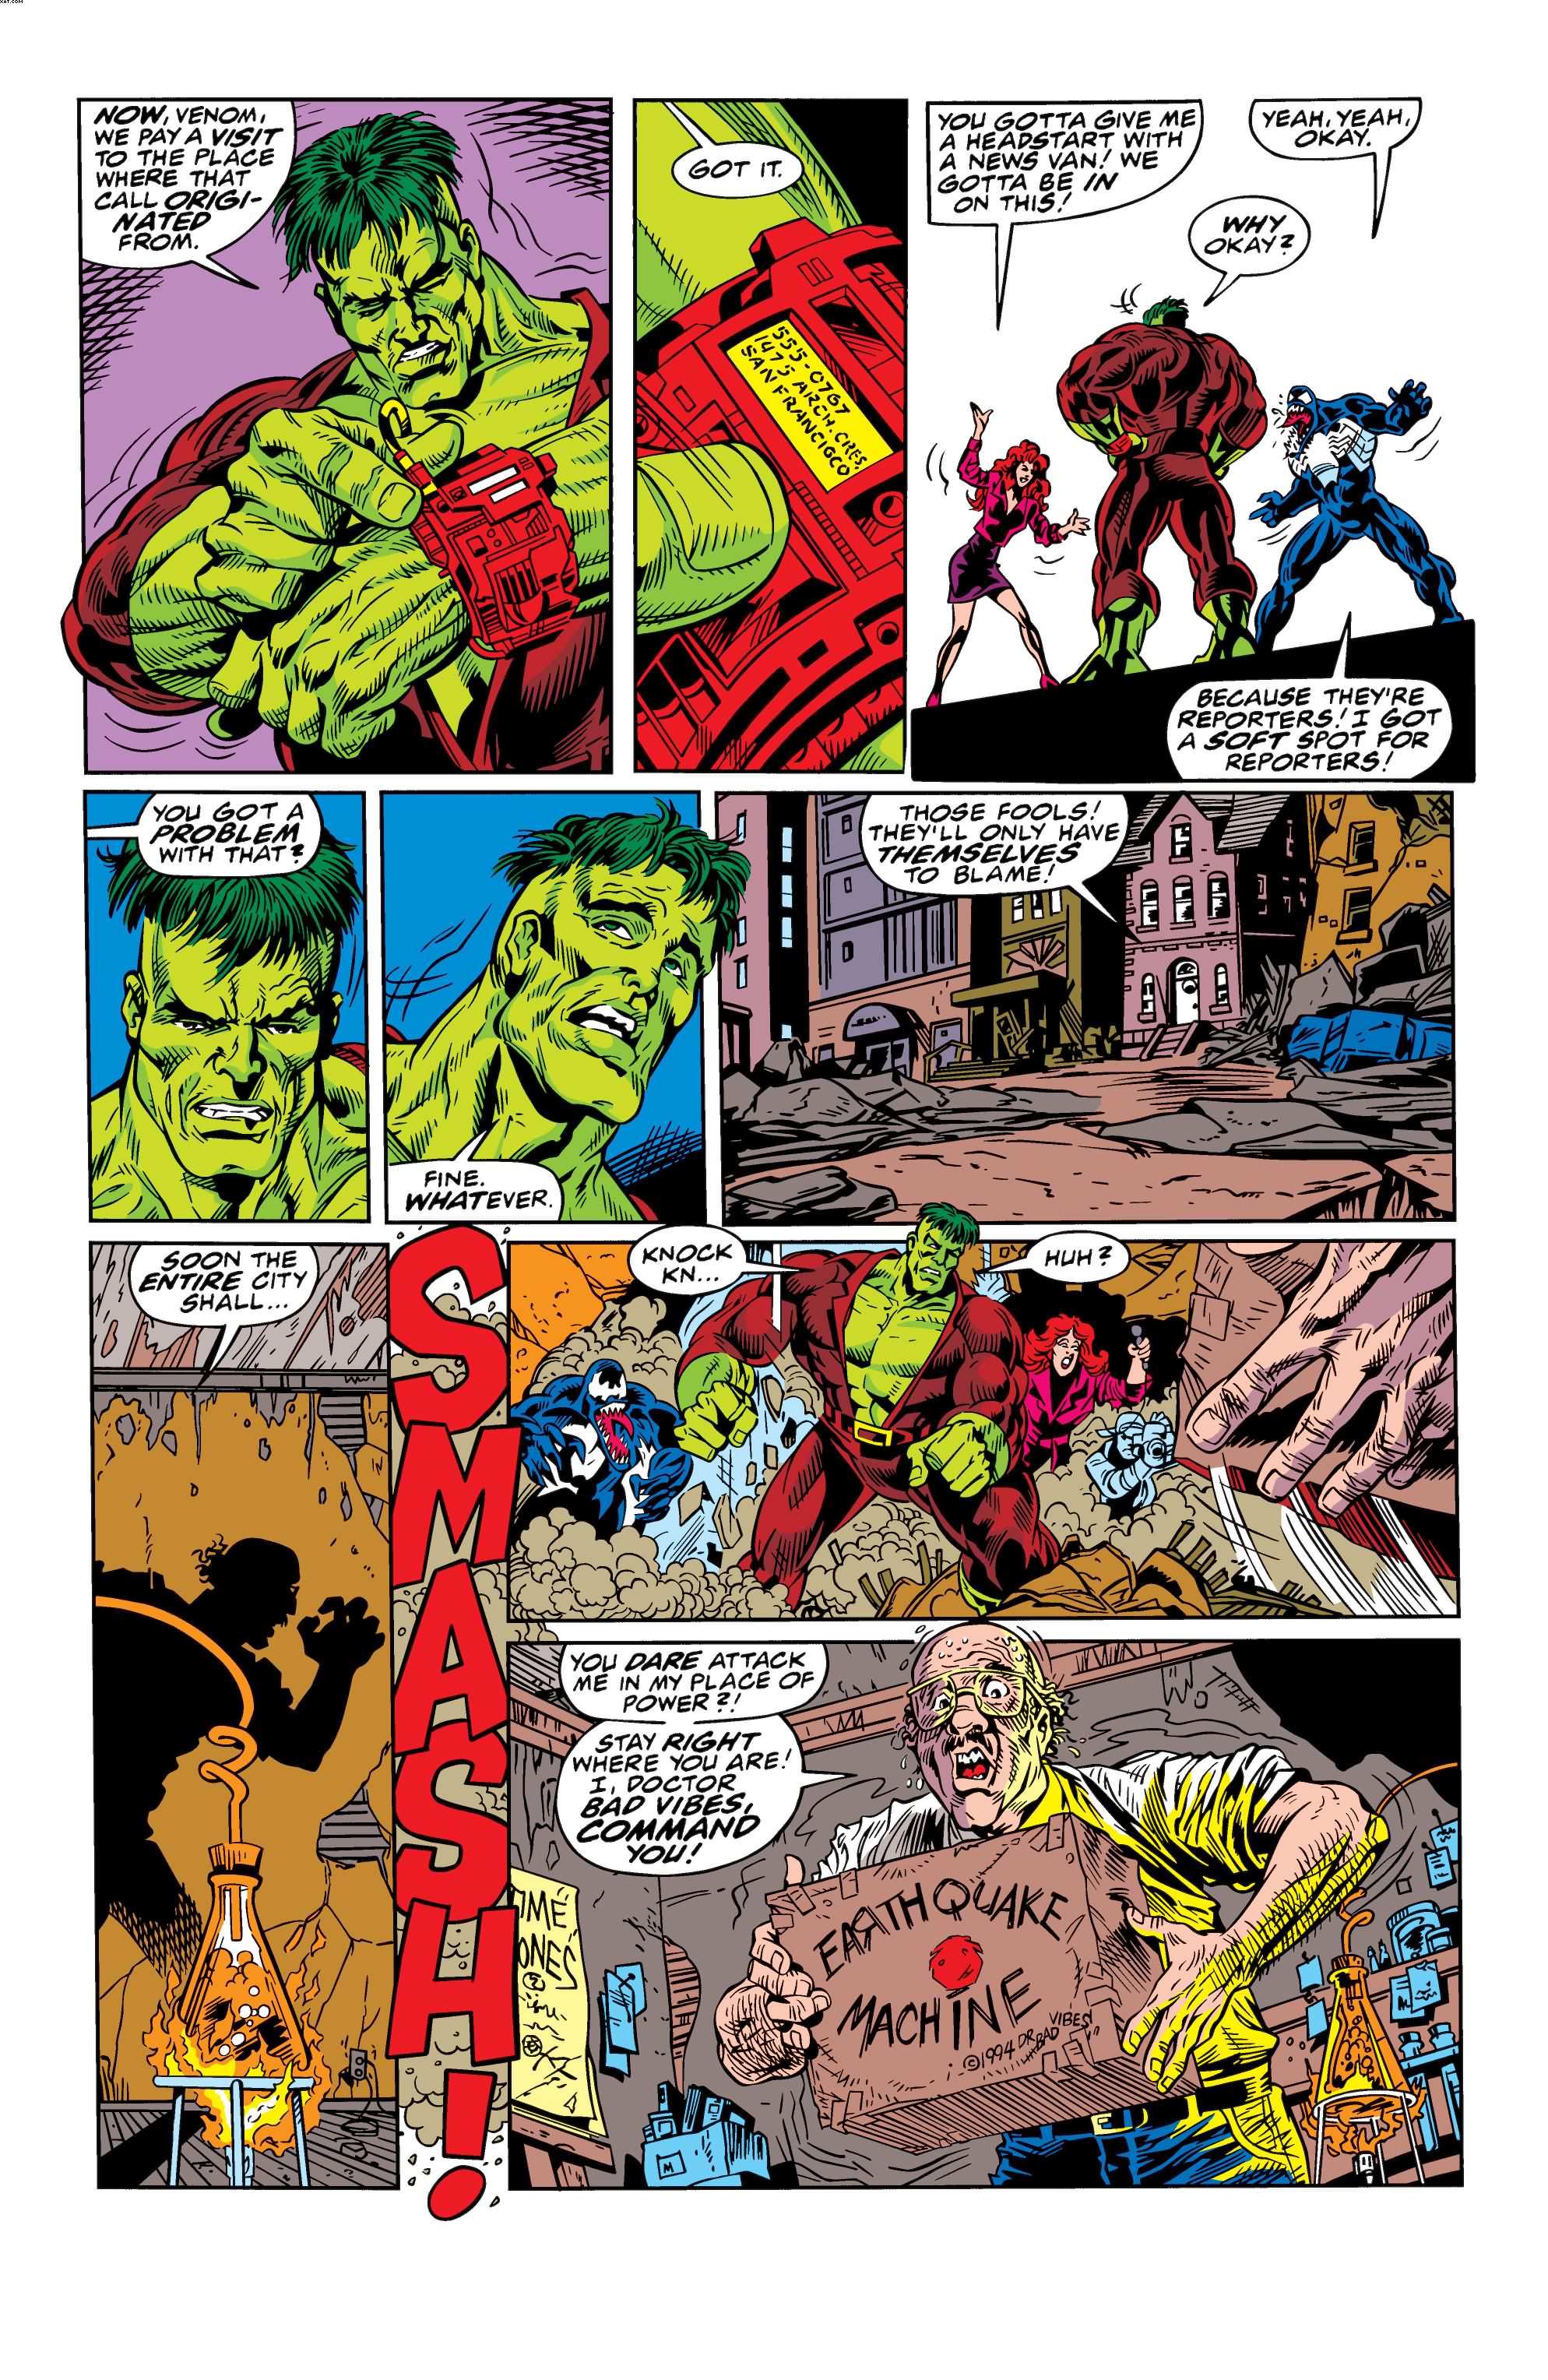 The Incredible Hulk vs. Venom 01-021.jpg